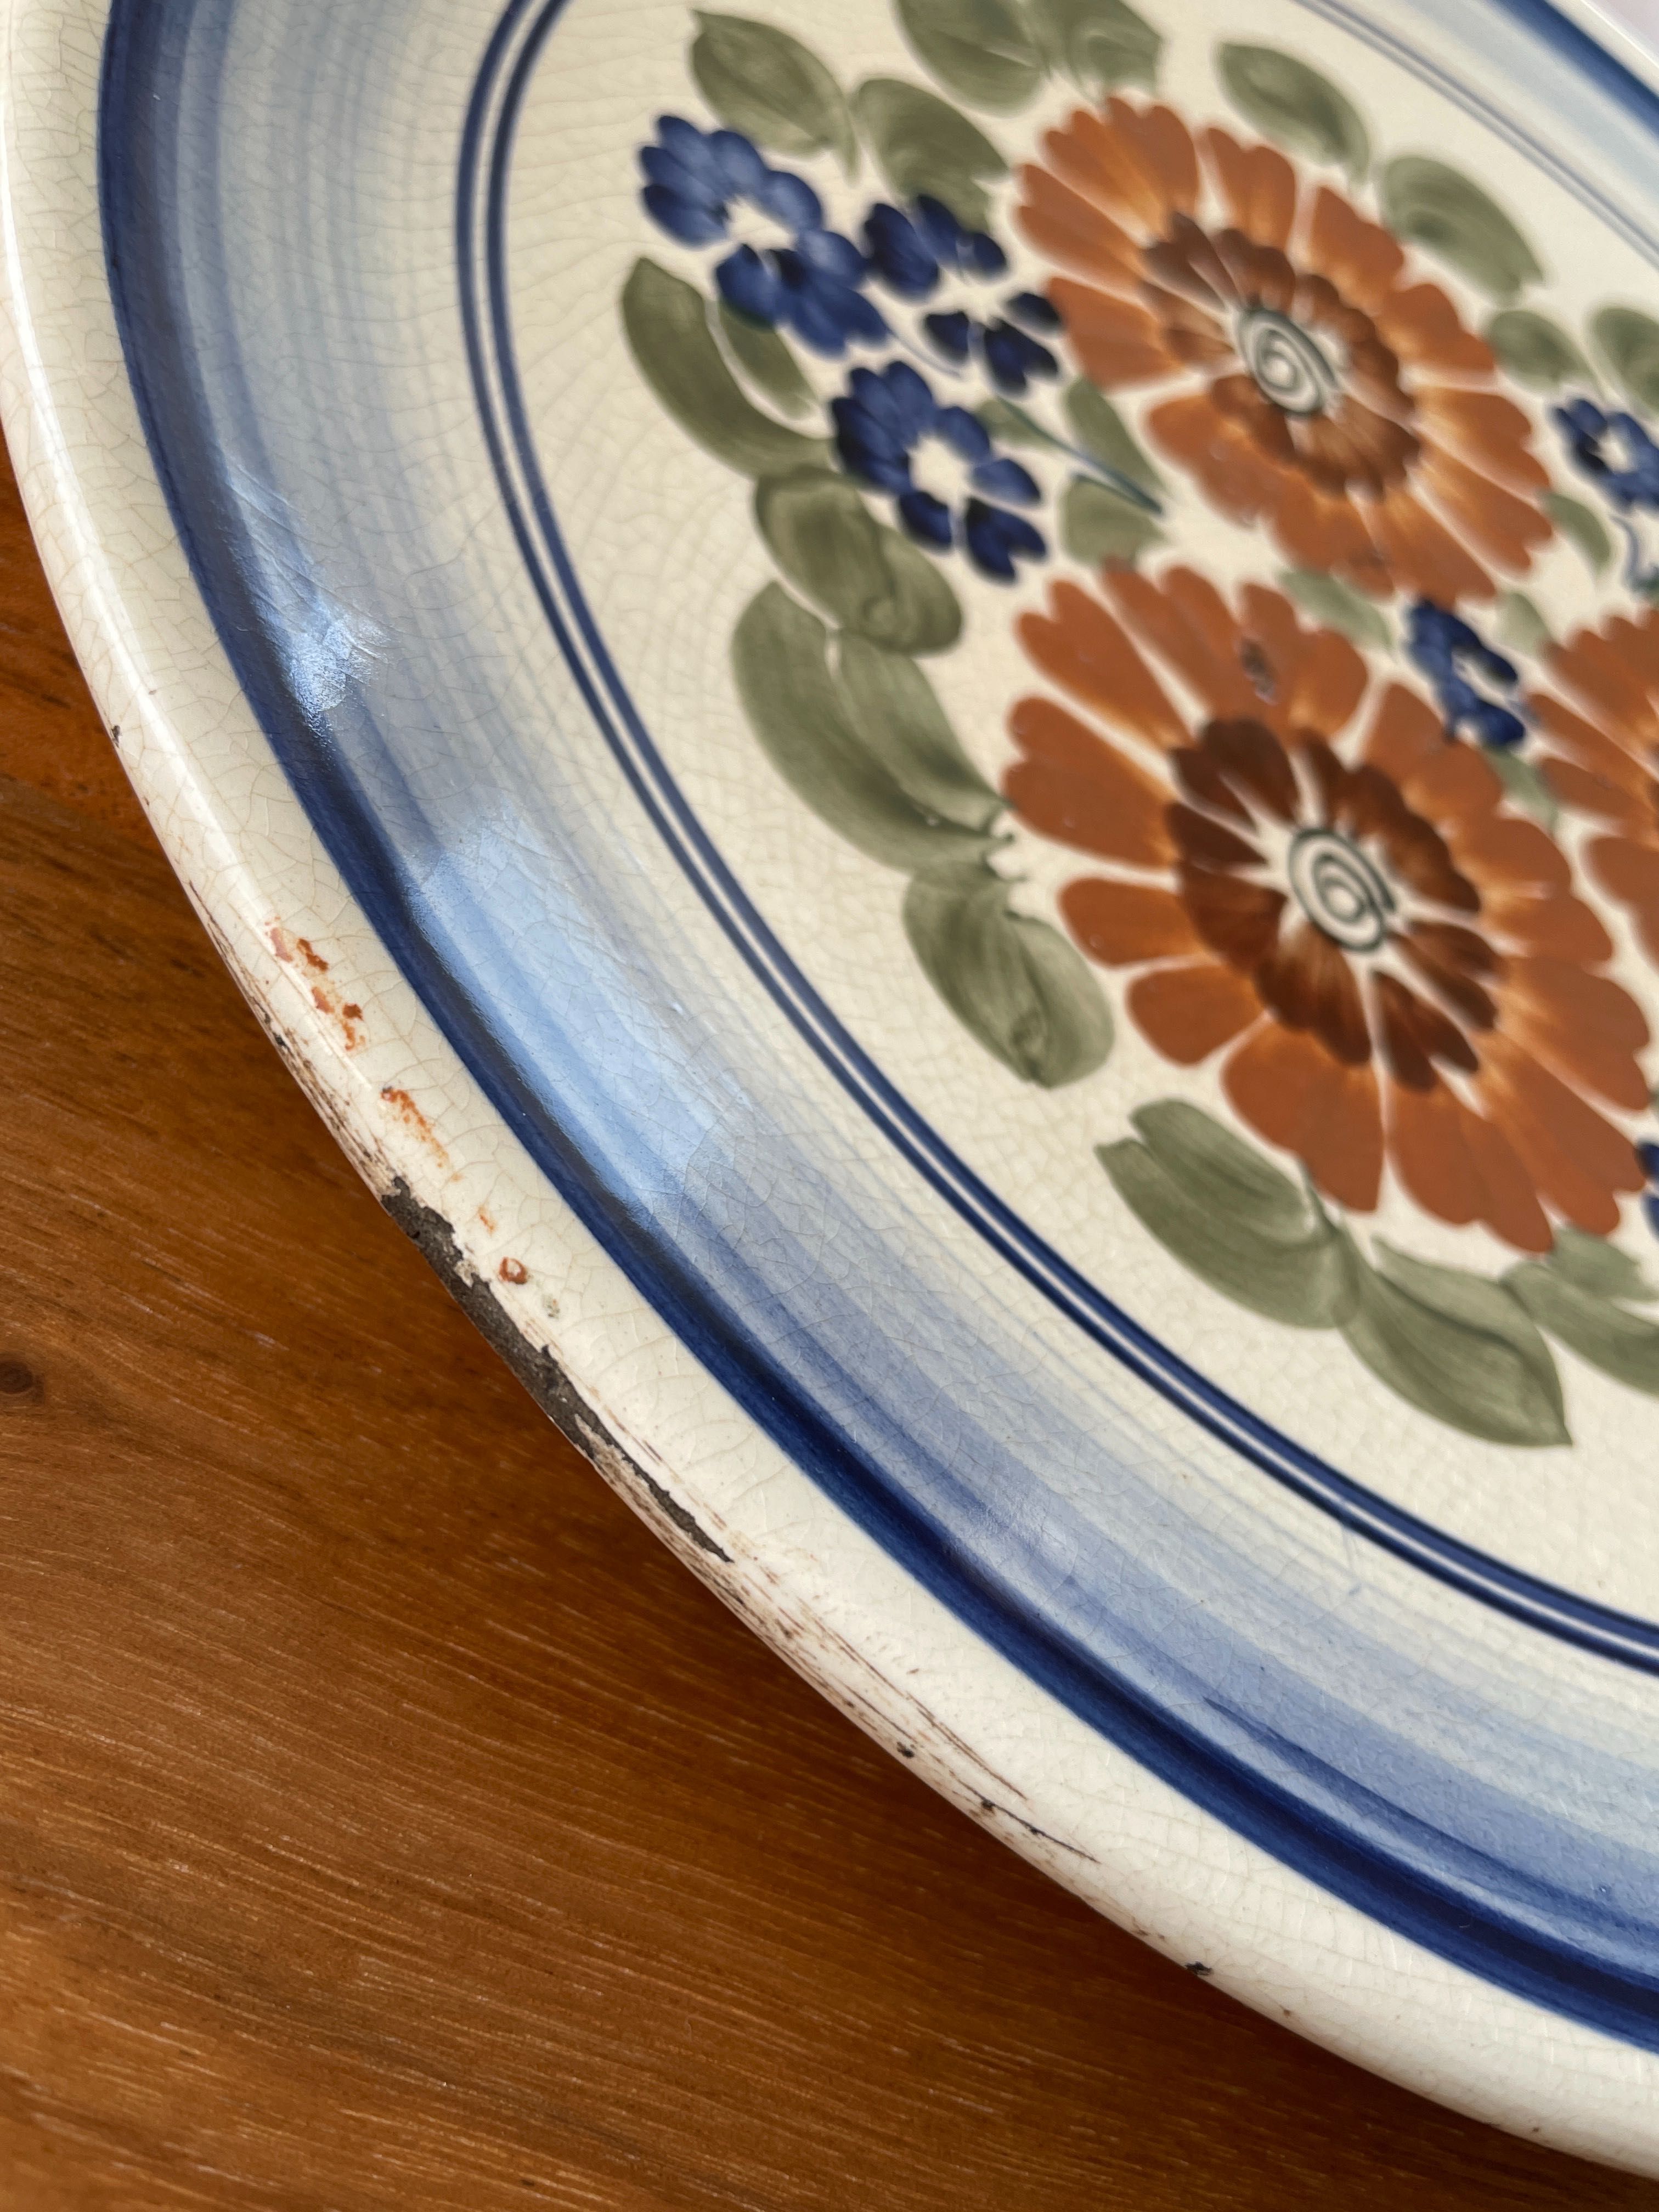 Piękny duży talerz patera - Ceramika fajans Włocławek Koło